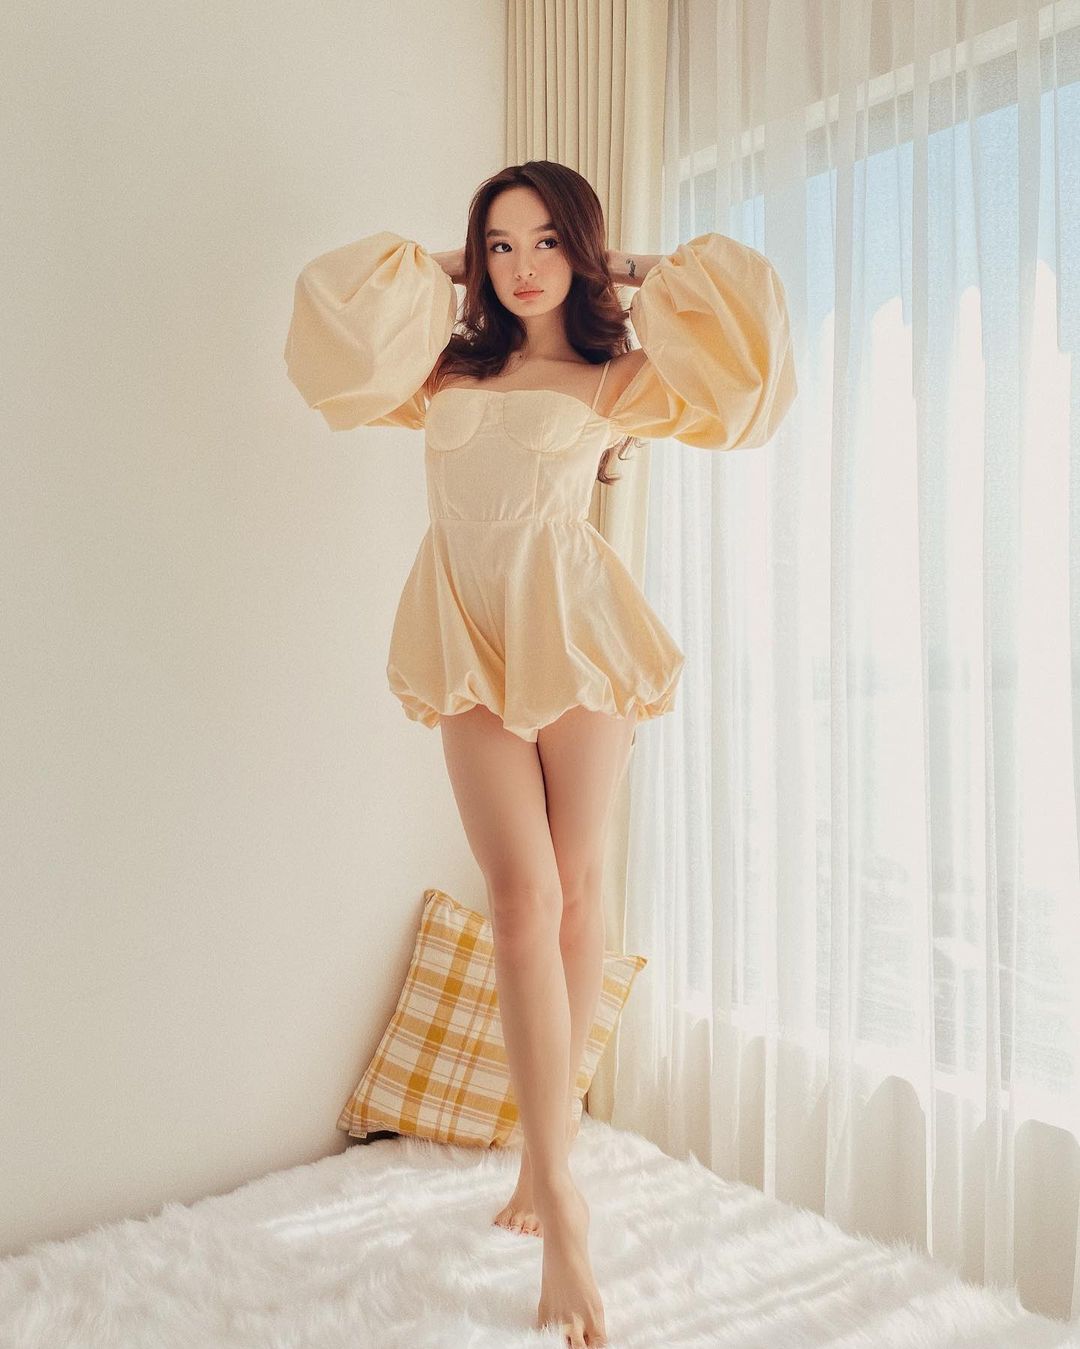 Kaity Nguyễn khoe đôi chân thon thả dù chỉ cao 1m50&nbsp;với thiết kế váy dáng siêu ngắn.